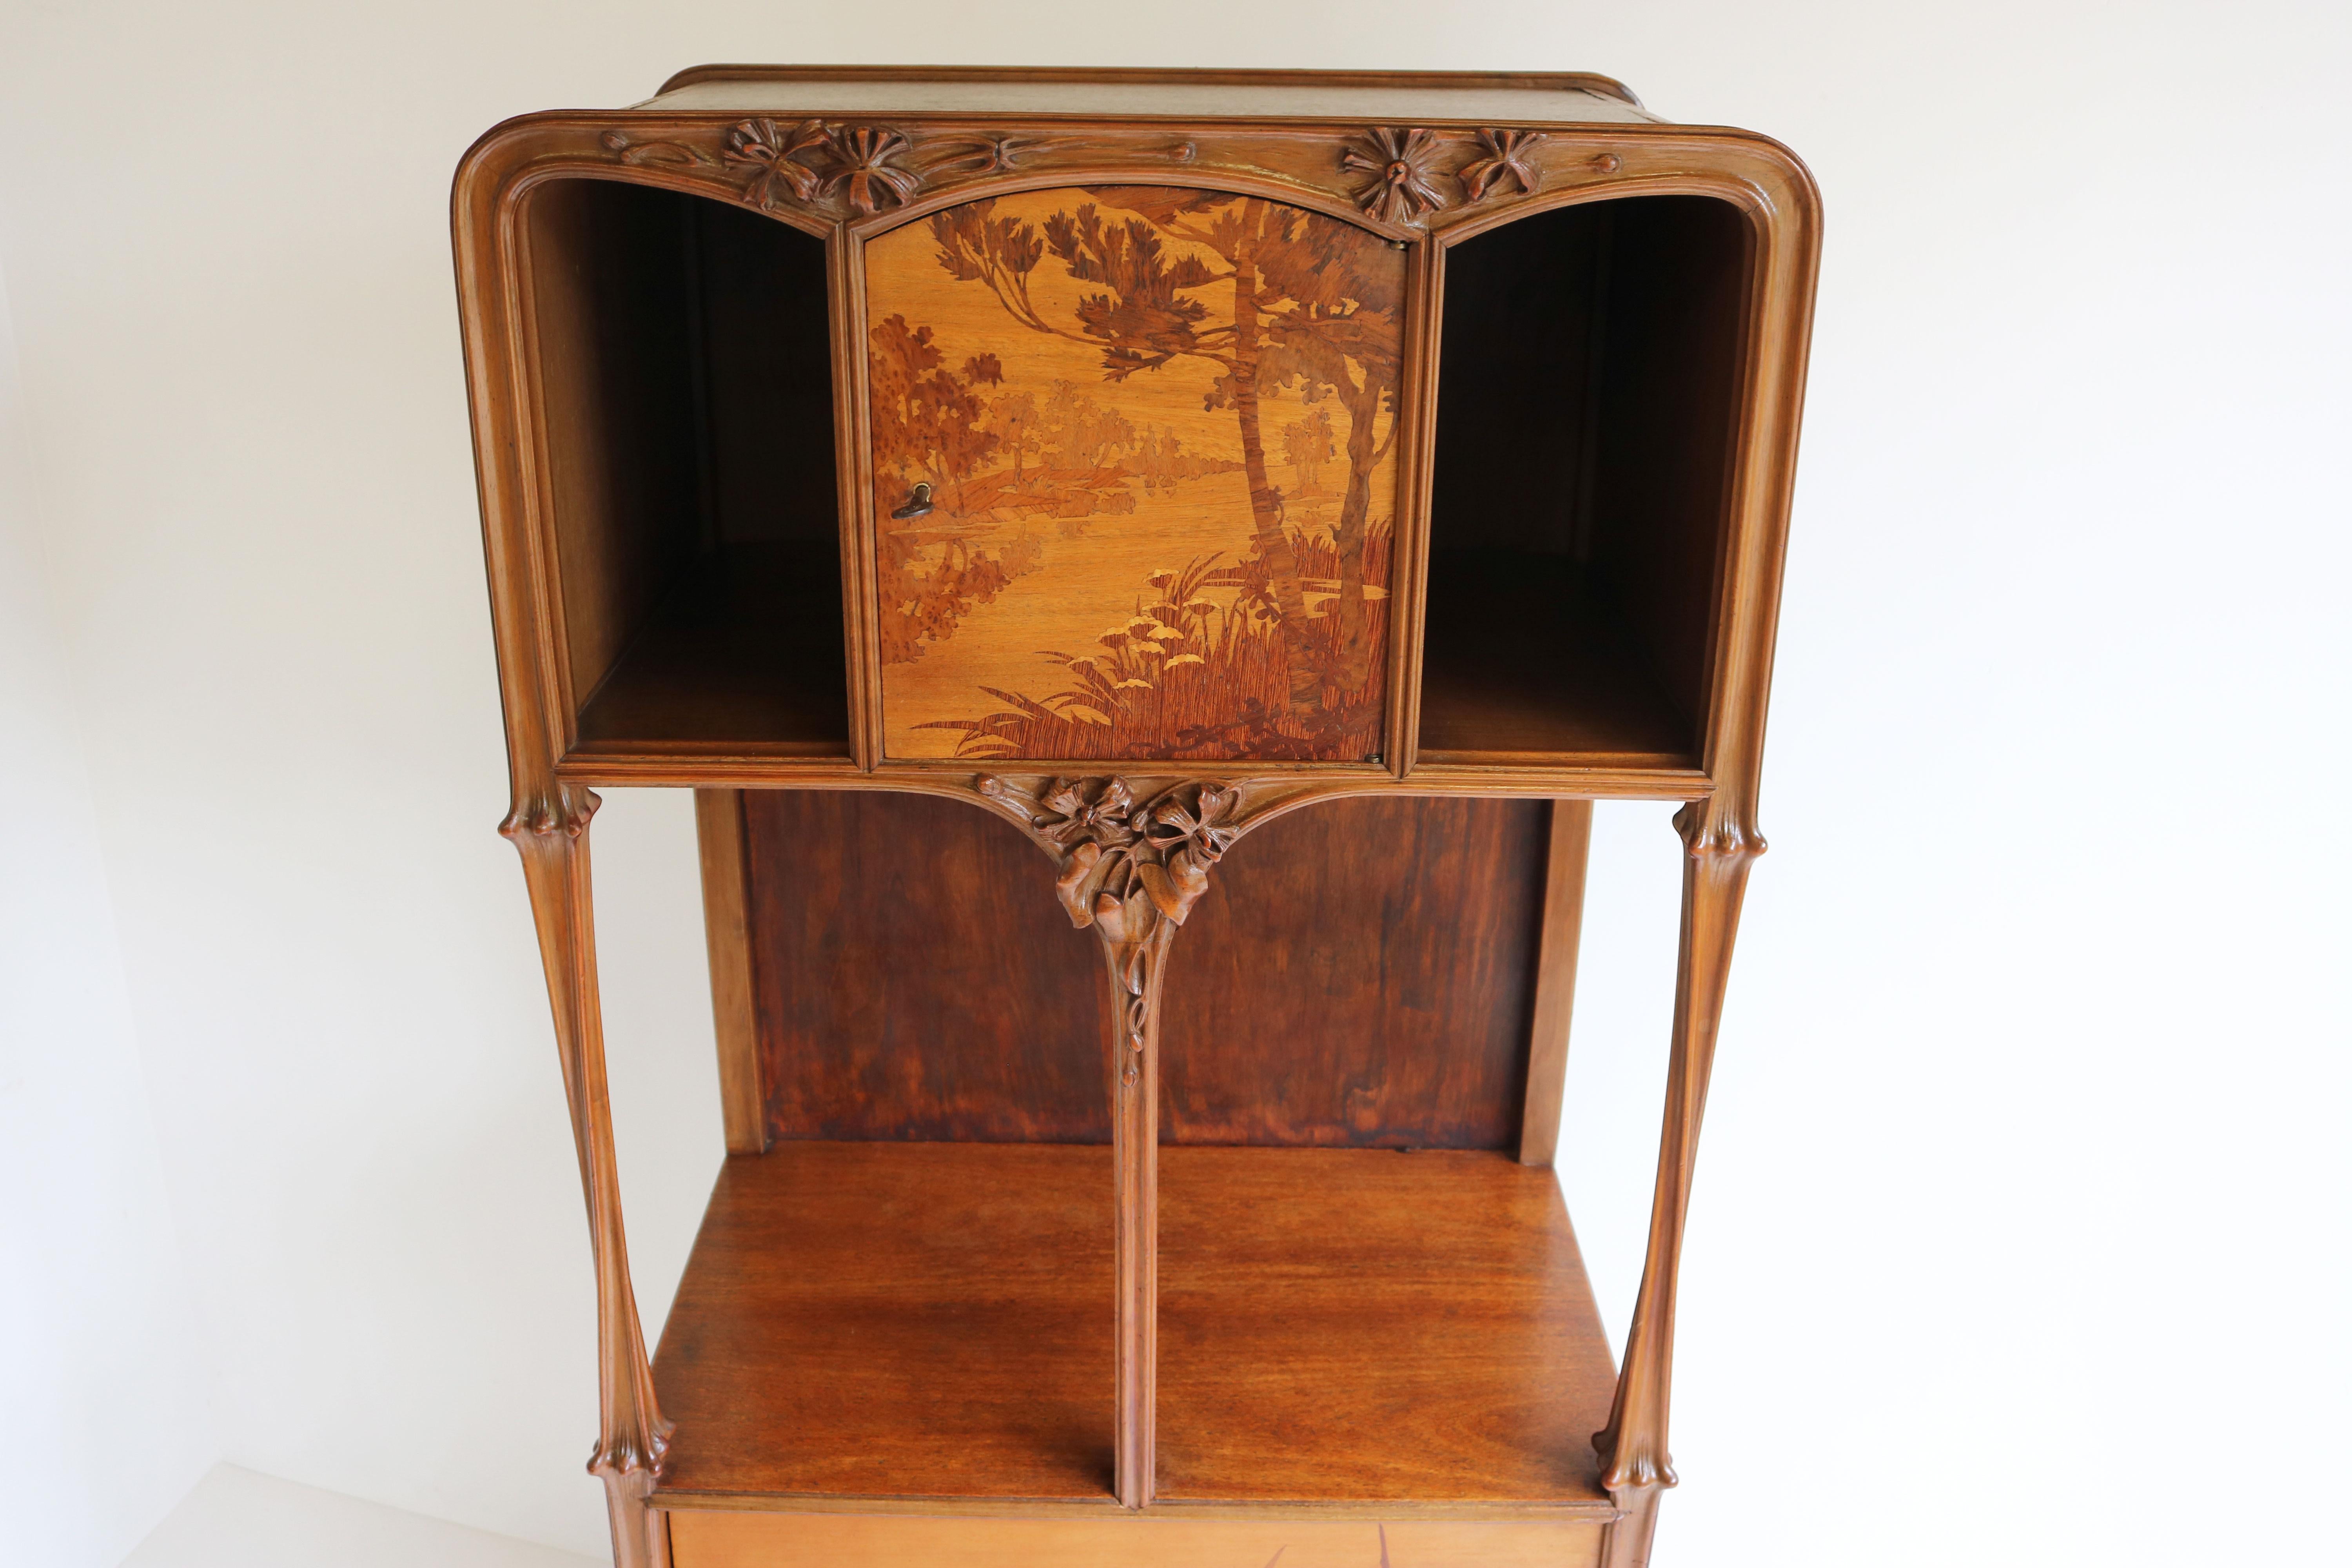 Exceptional Art Nouveau Cabinet by Louis Majorelle 1900 French Antique Nancy For Sale 3